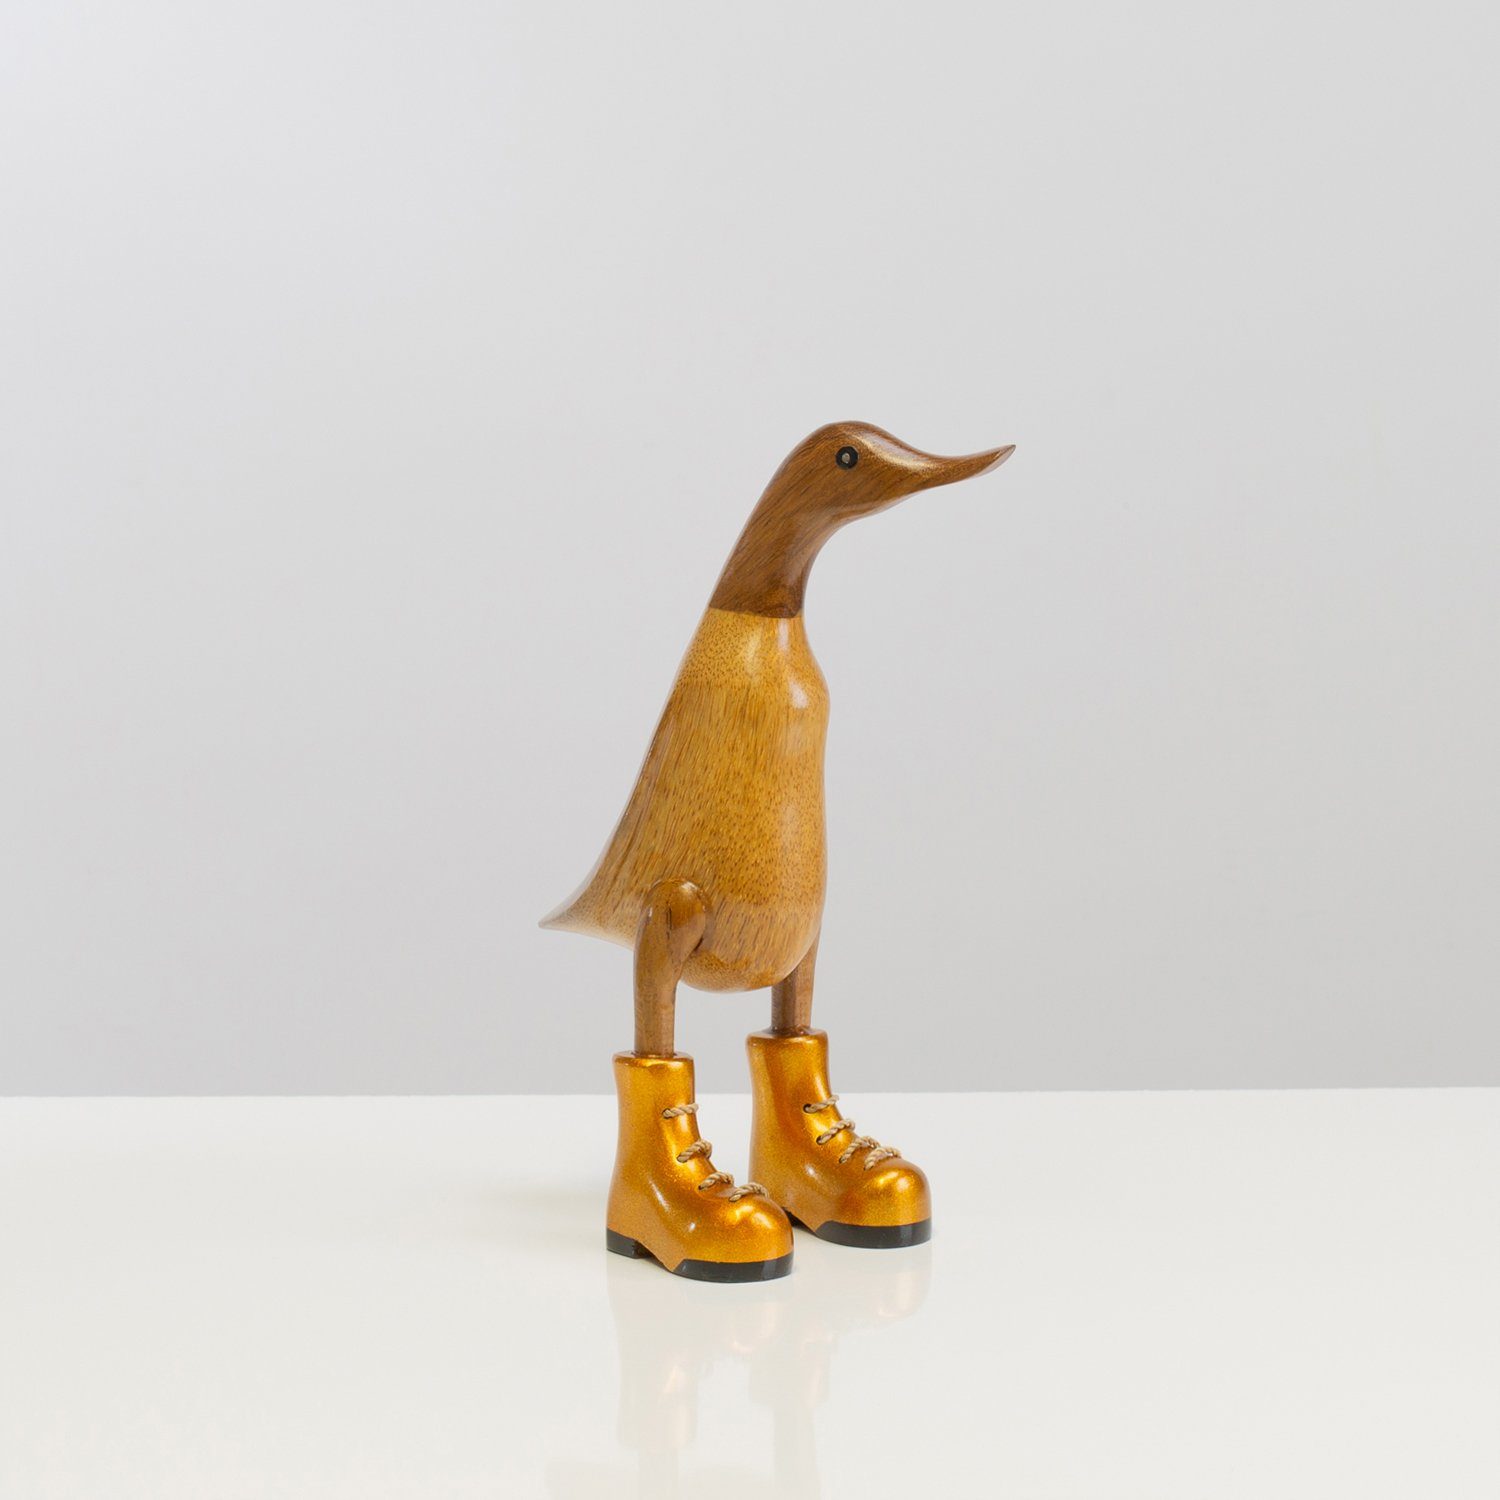 Rikmani Dekofigur Holzfigur Ente Stiefel - Handgefertigte Dekoration aus Holz Geschenk (3-er Set), 3 Holzarten gold